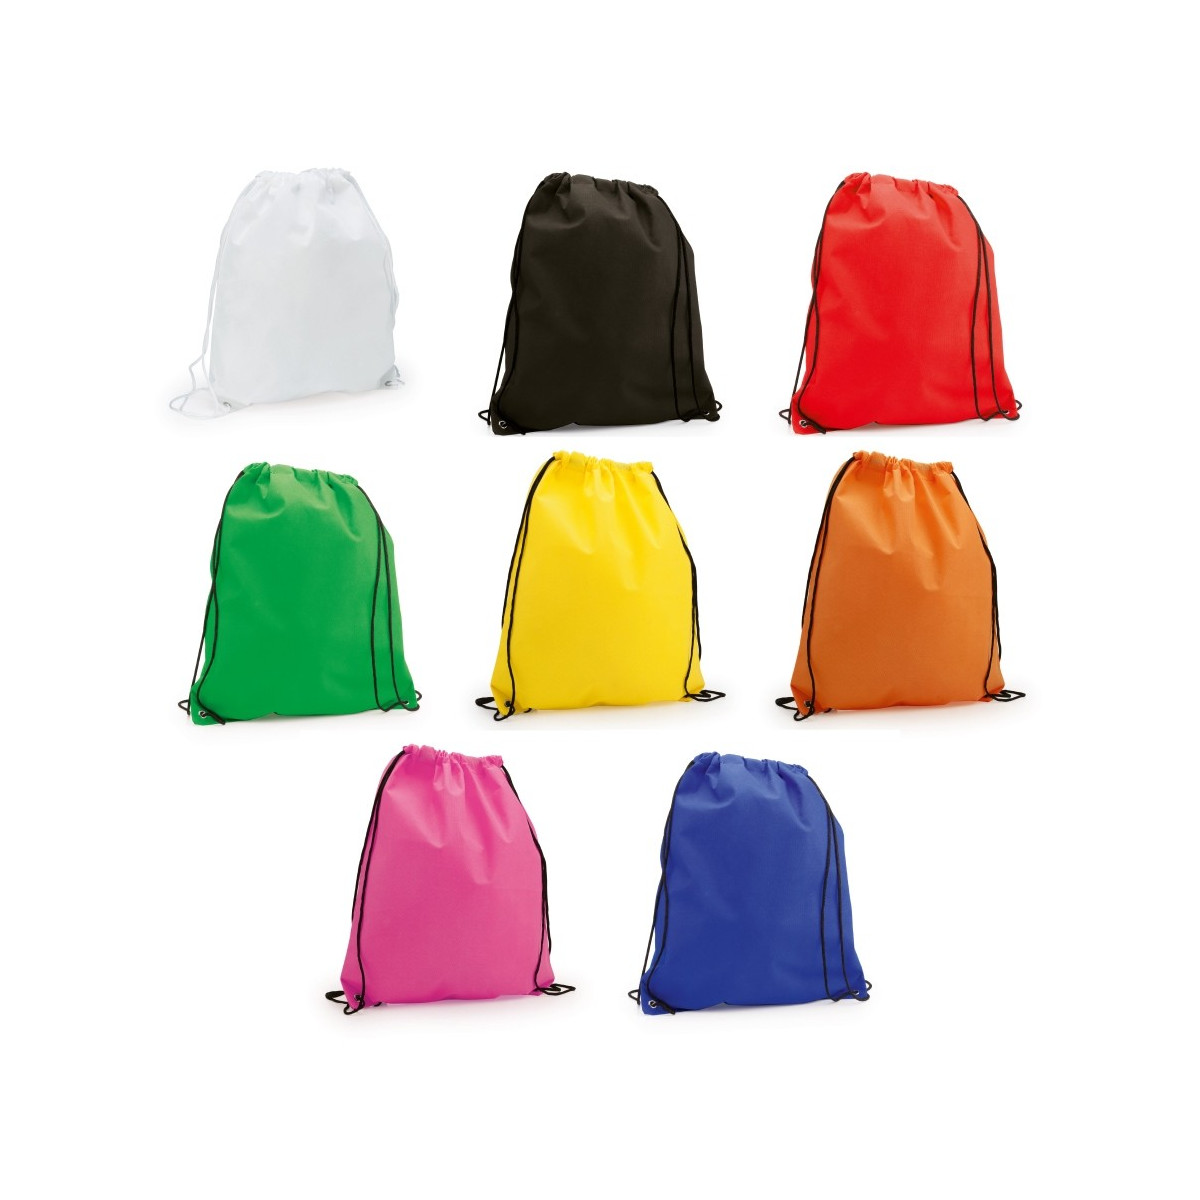 Regalos mochilas saquitos de colores